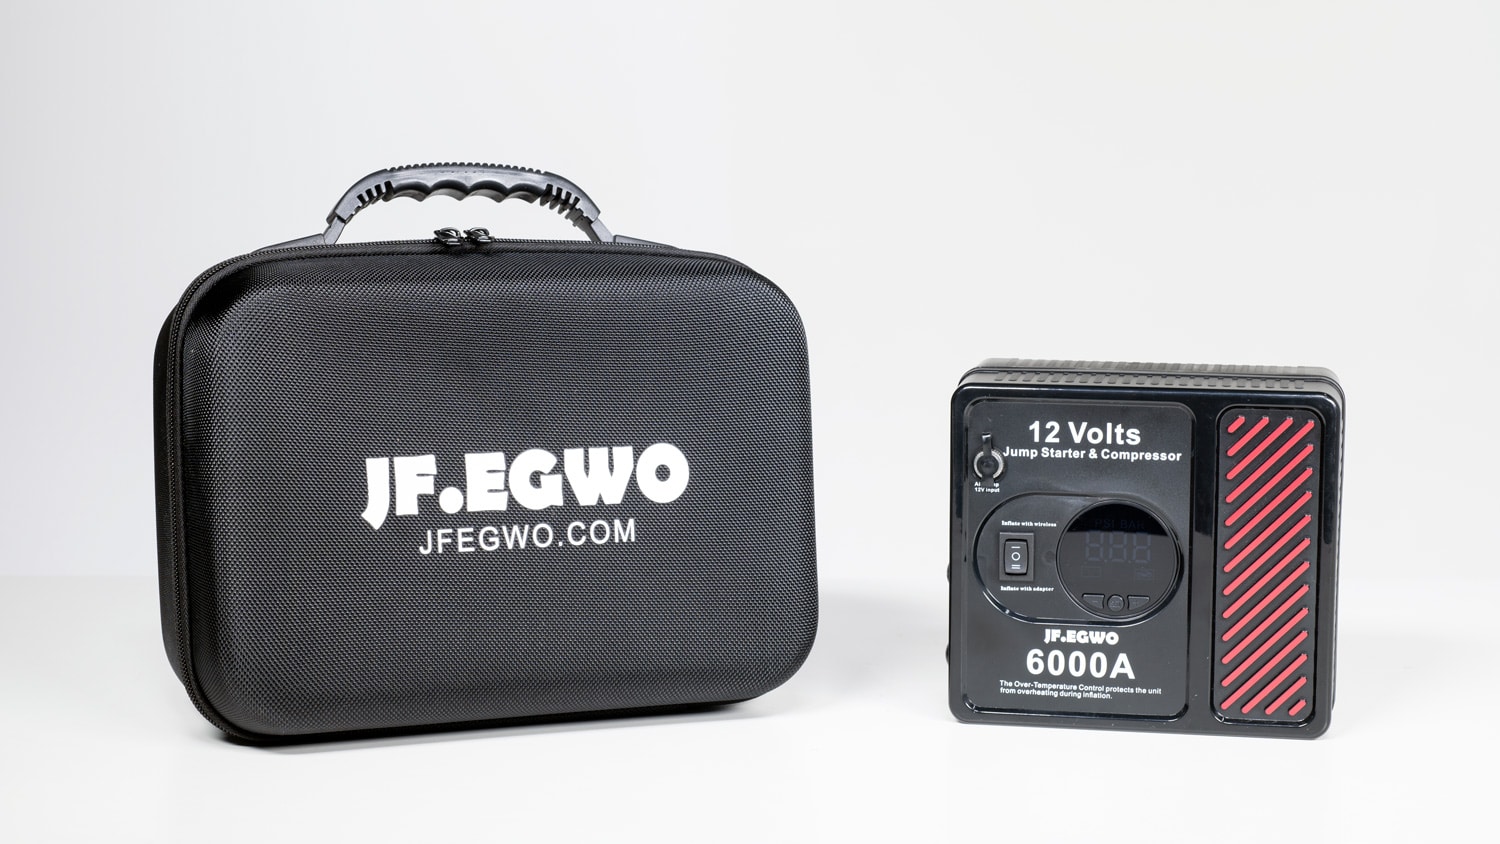 JF.EGWO 6000A Jump Starter